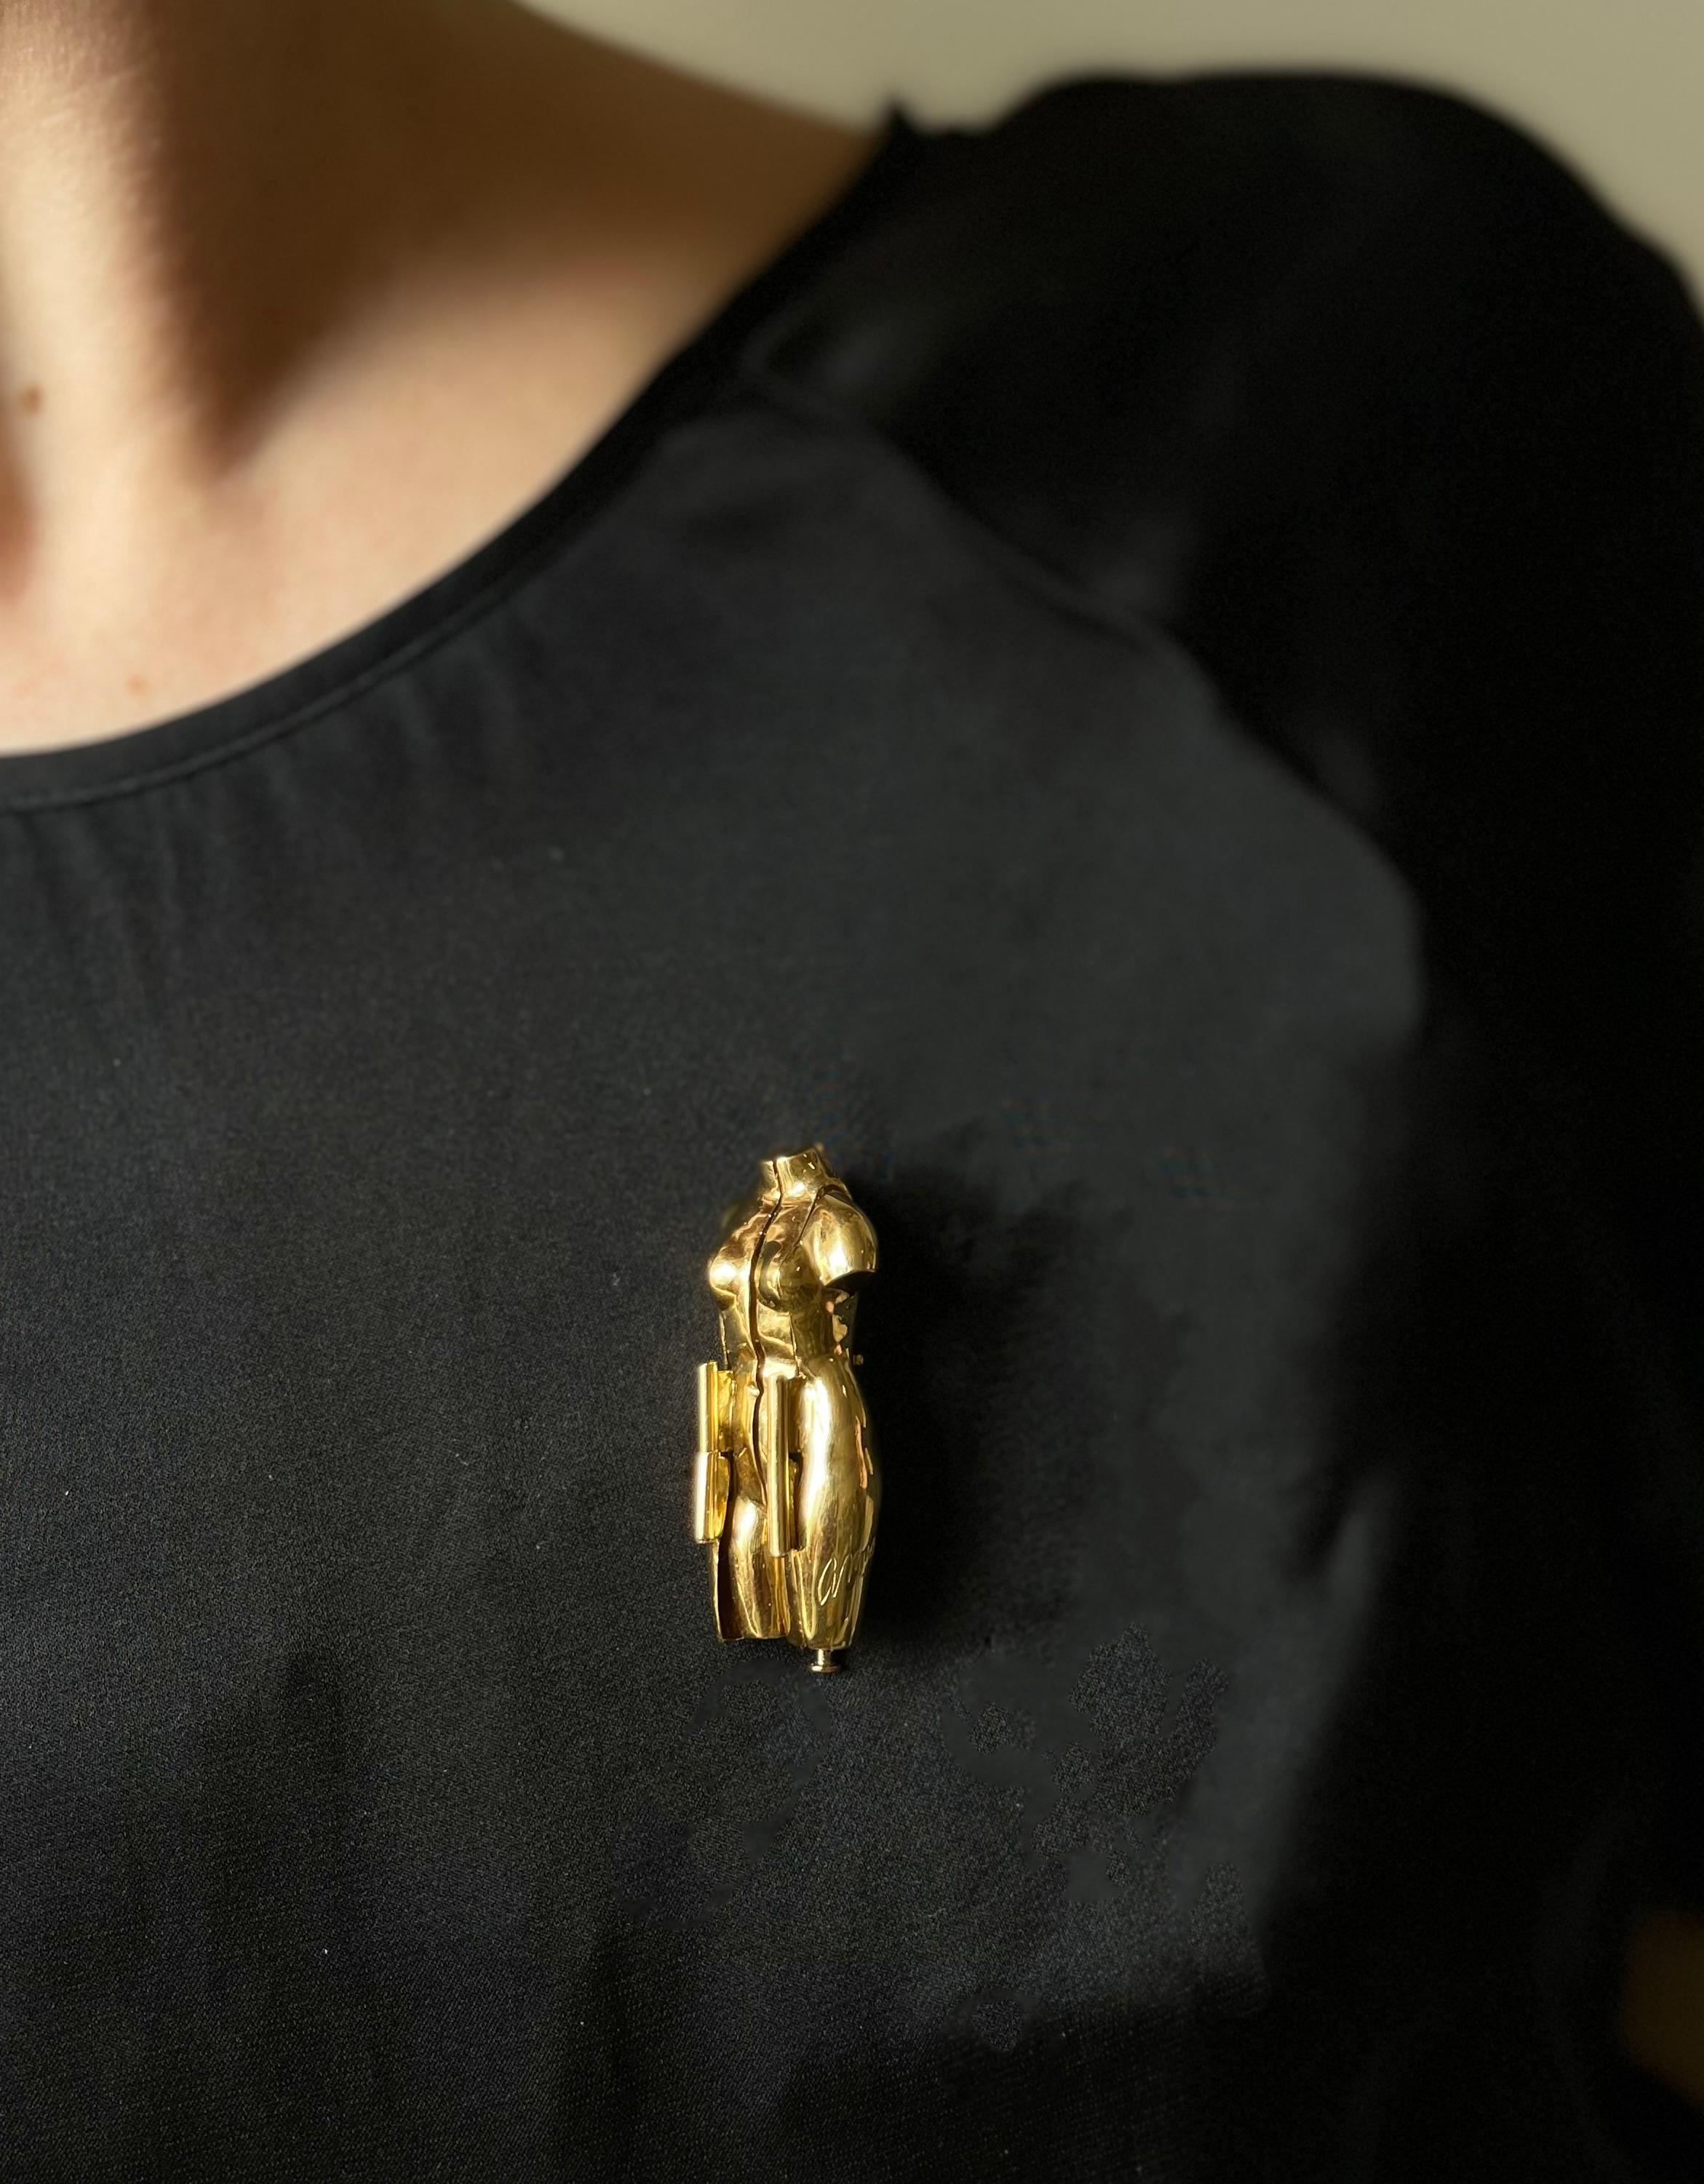 Unique designer signed 18k gold female figure locket brooch,  French made. Brooch measures 1 12/16